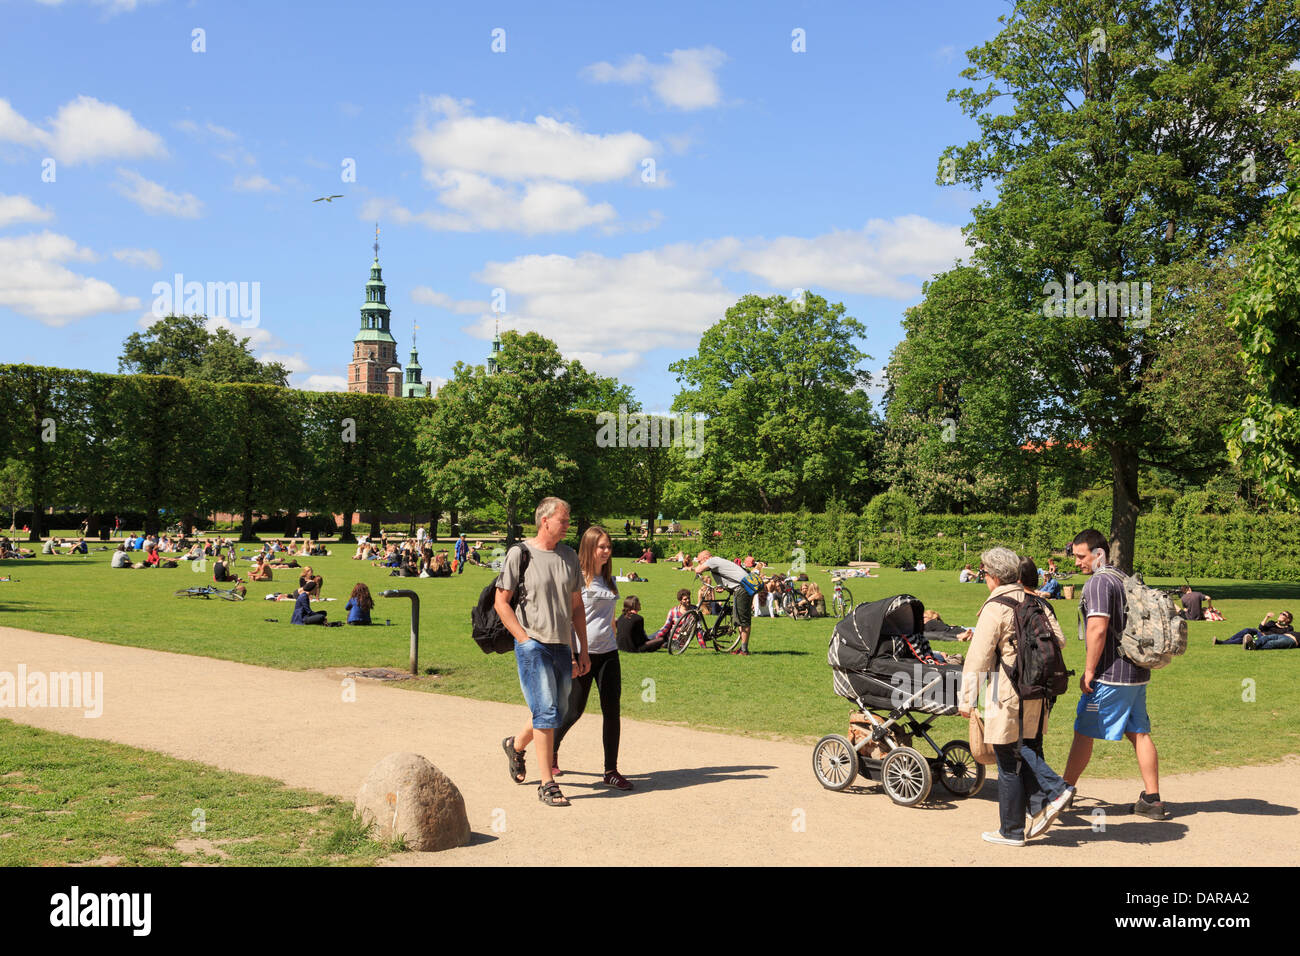 Les gens se promener et se détendre dans le jardin du roi ou Royal Park dans le soleil d'été. Copenhague, Danemark, Nouvelle-Zélande Banque D'Images